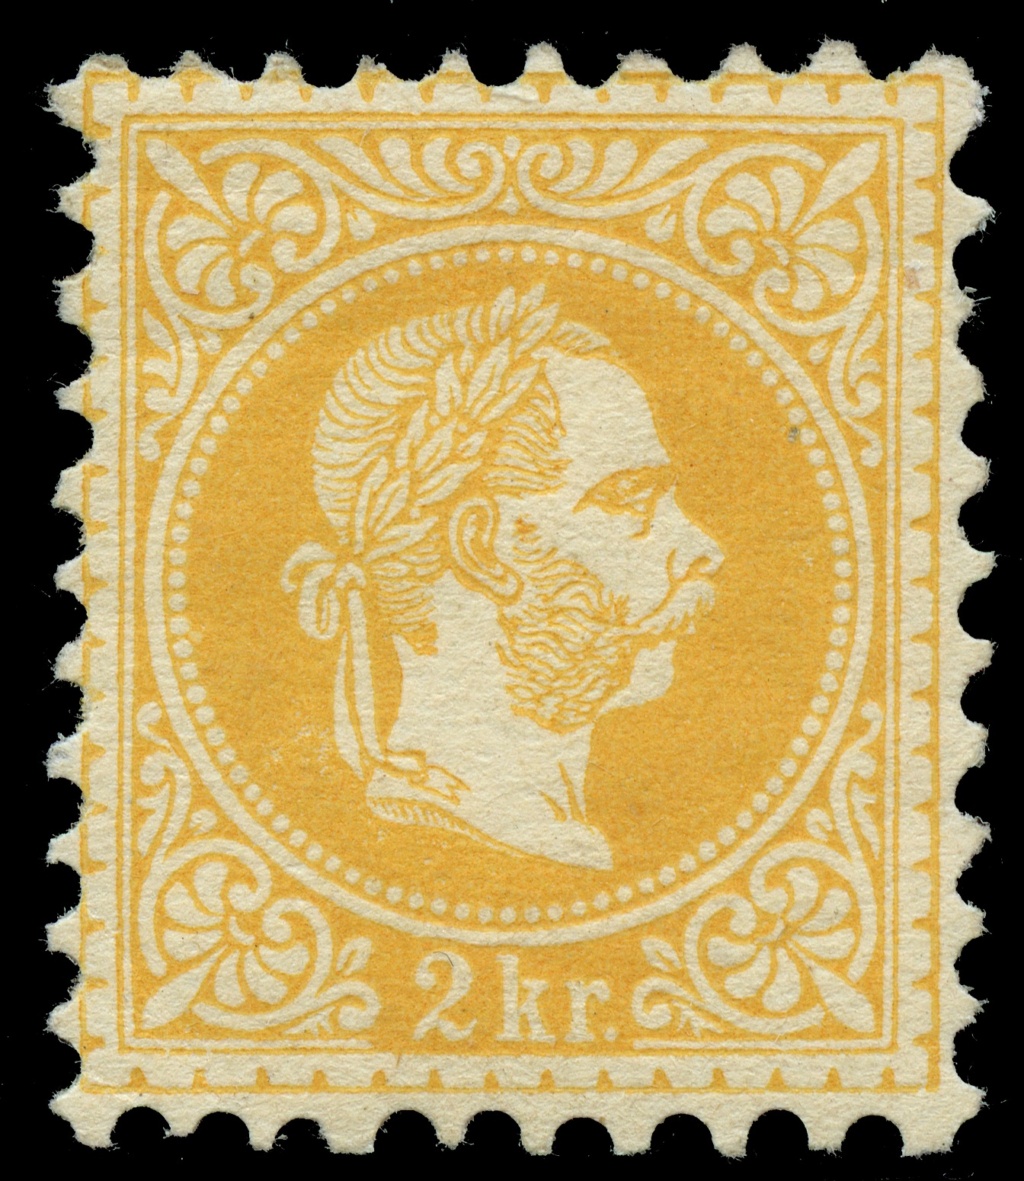 Freimarken-Ausgabe 1867 : Kopfbildnis Kaiser Franz Joseph I - Seite 23 Ank_3520